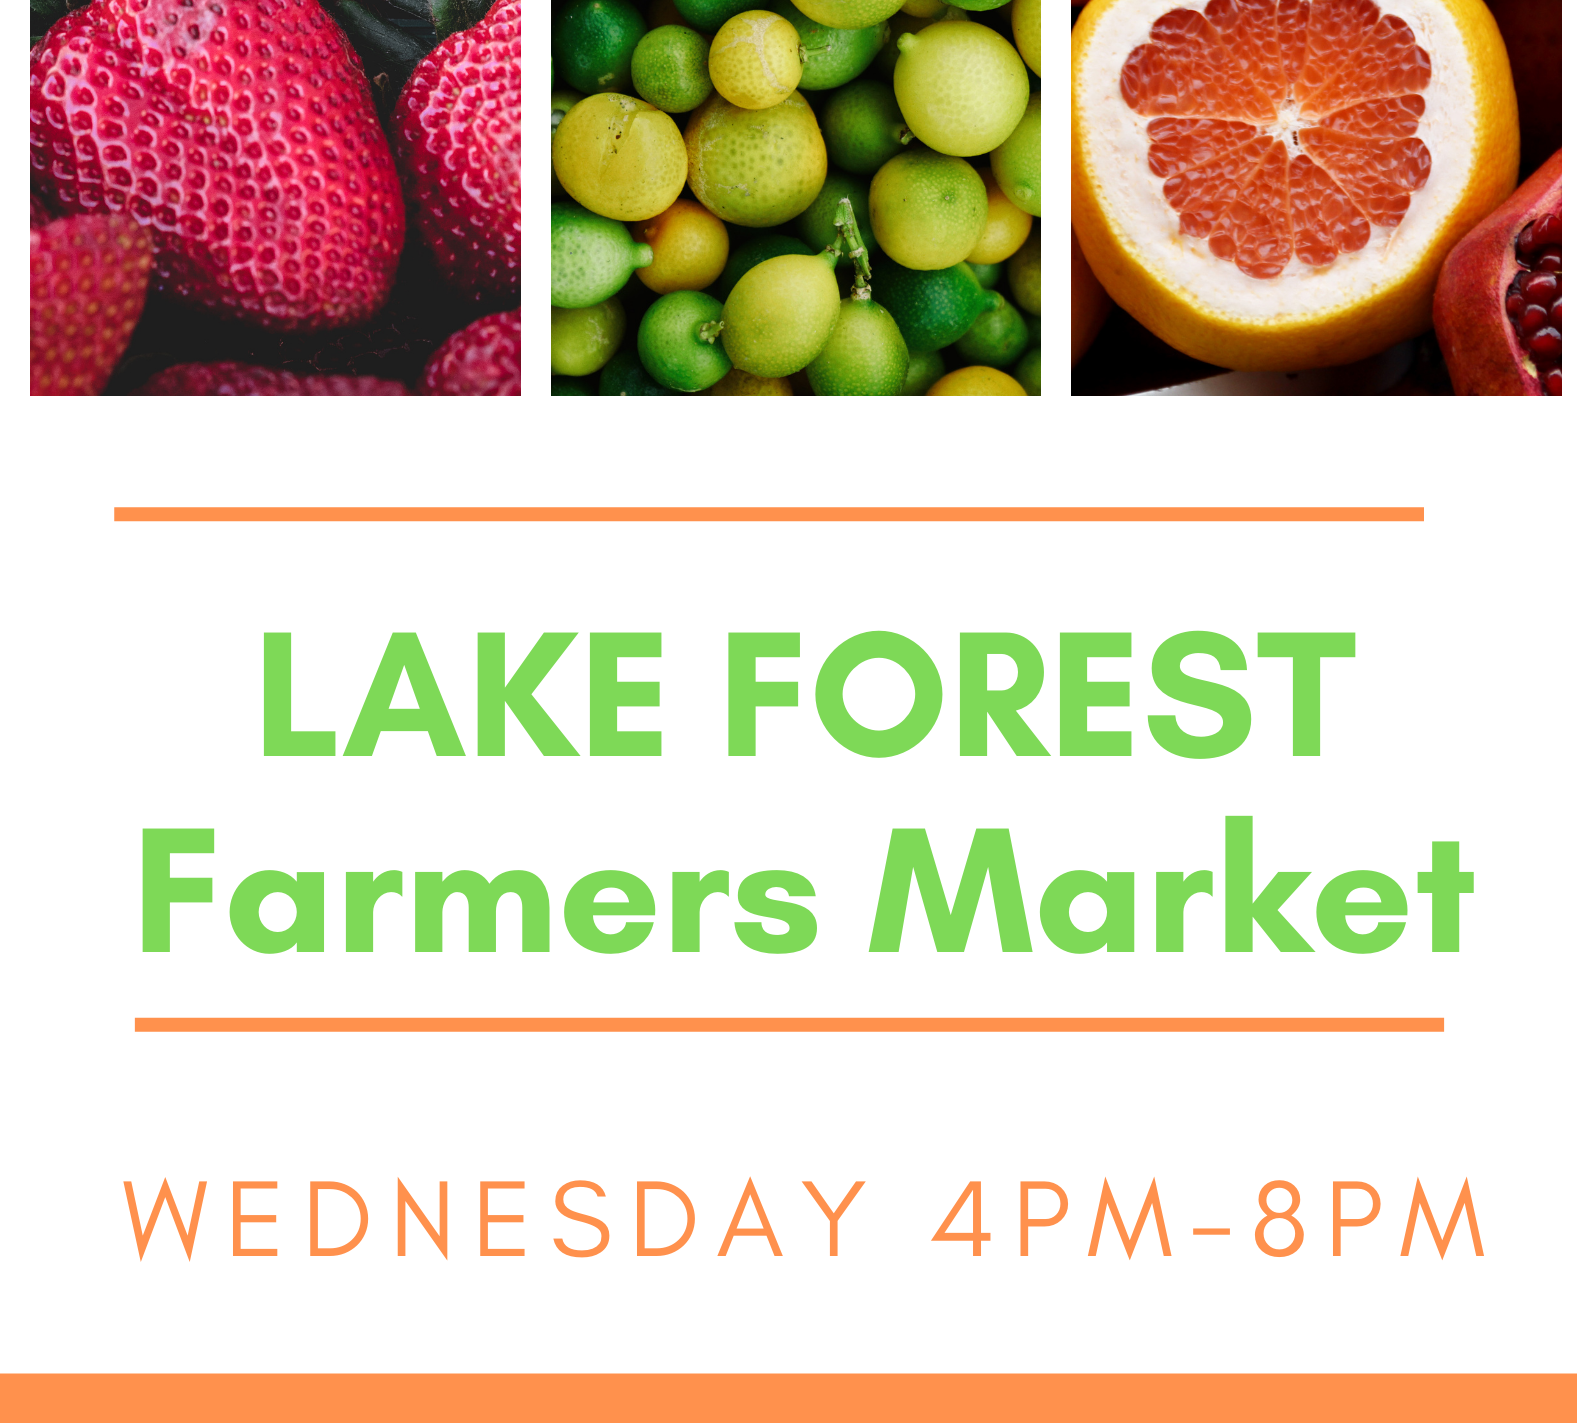 Lake Forest Certified Farmers Market